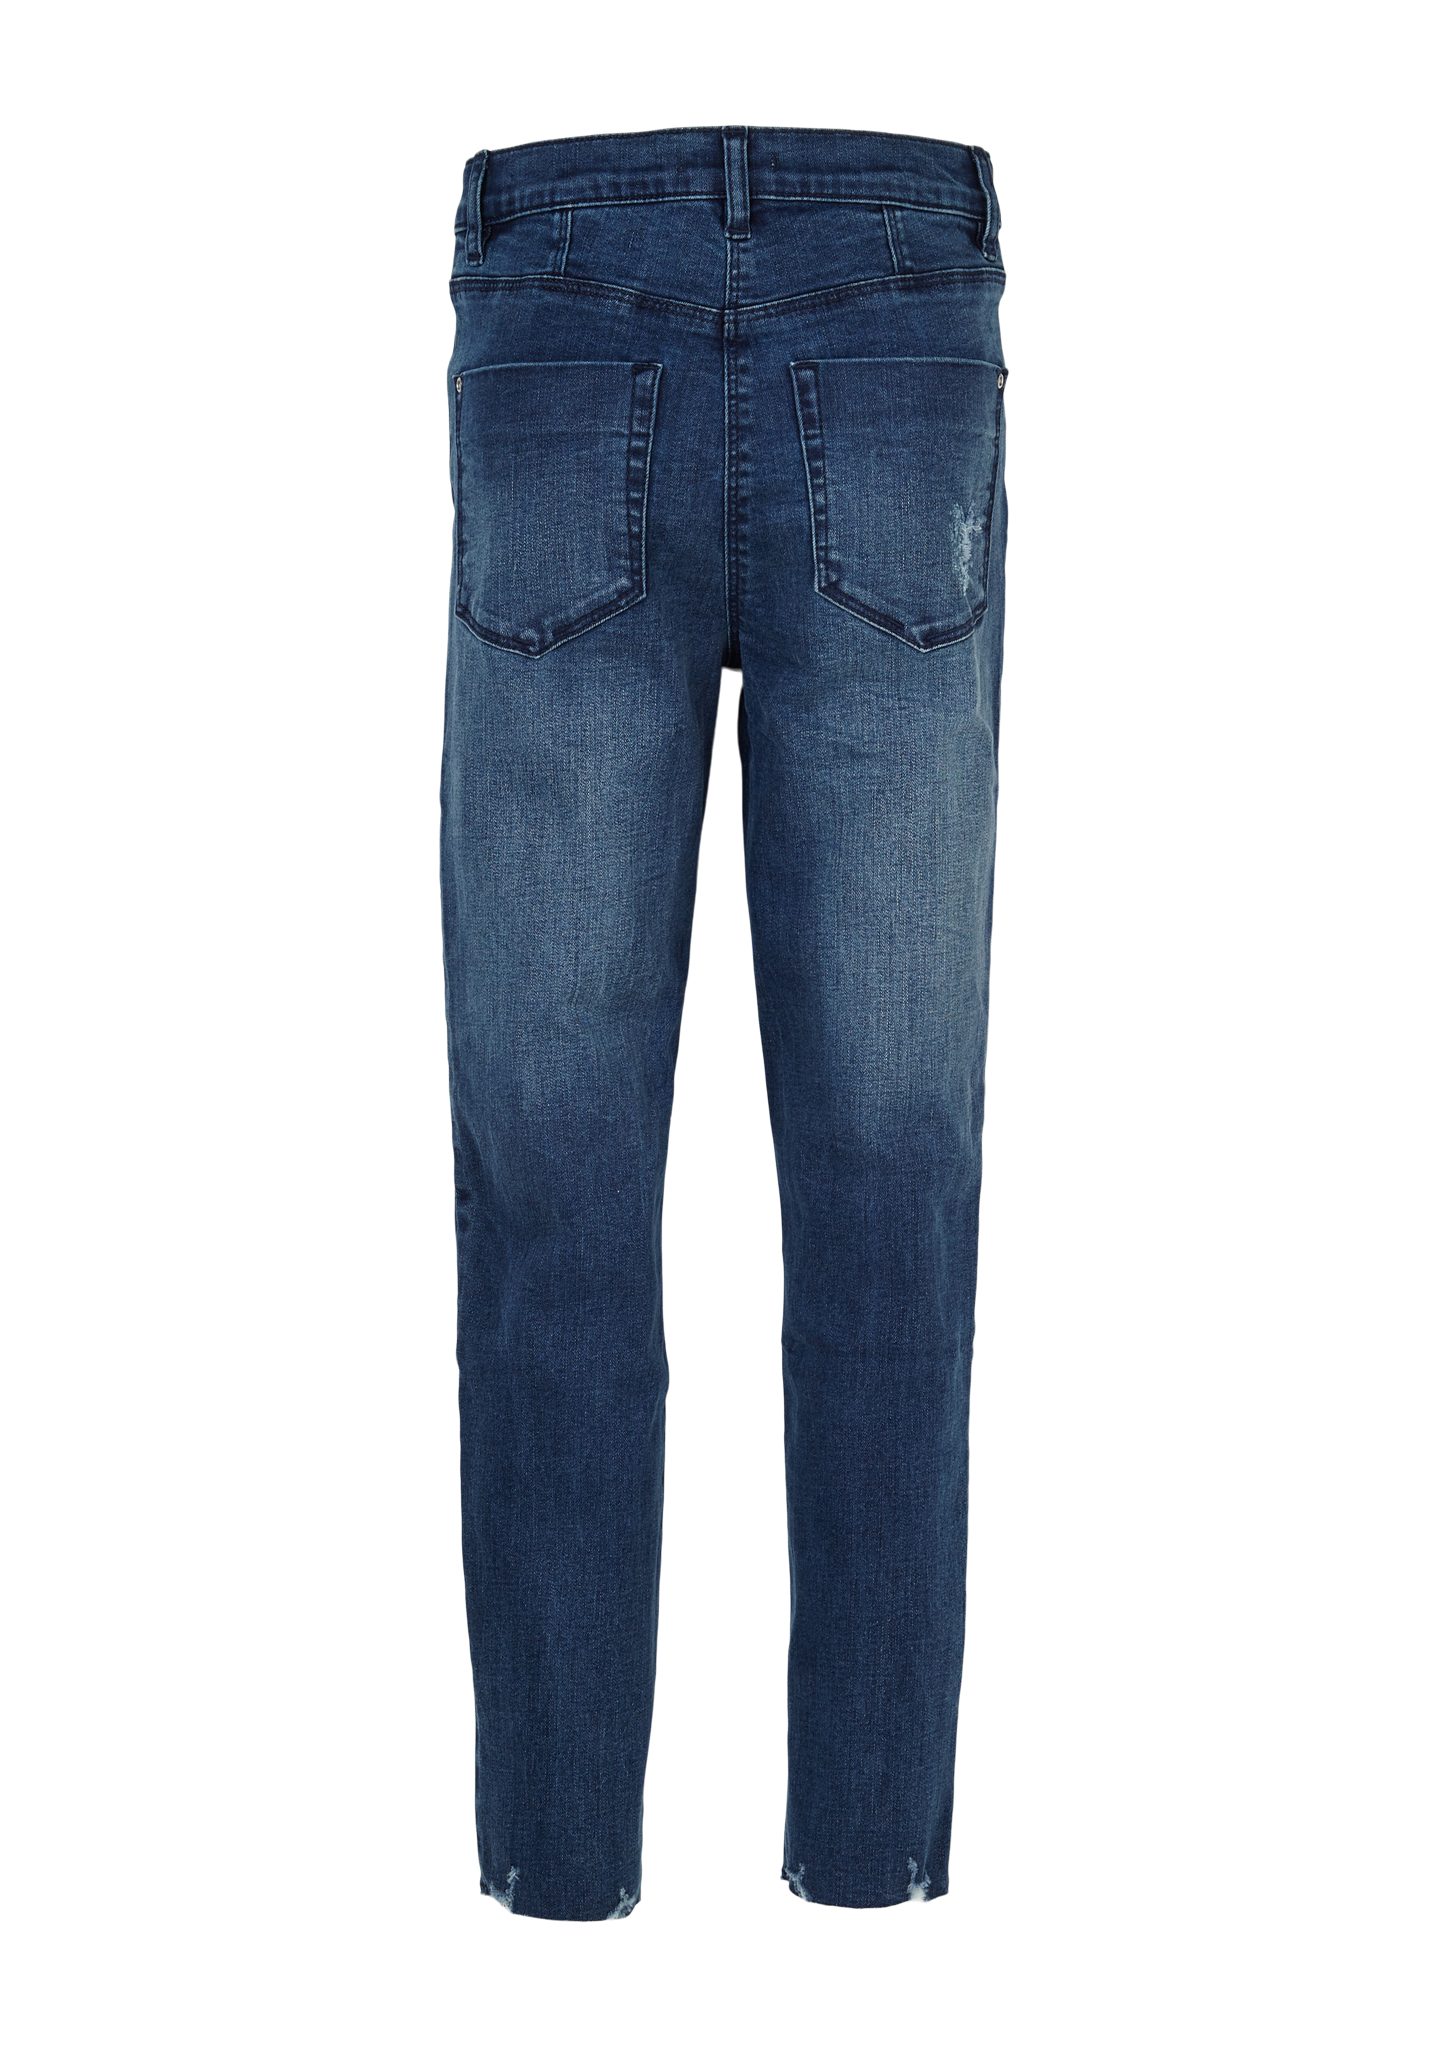 s.Oliver leg-Jeans blue Suri: Destroyes dark Skinny 5-Pocket-Jeans Skinny